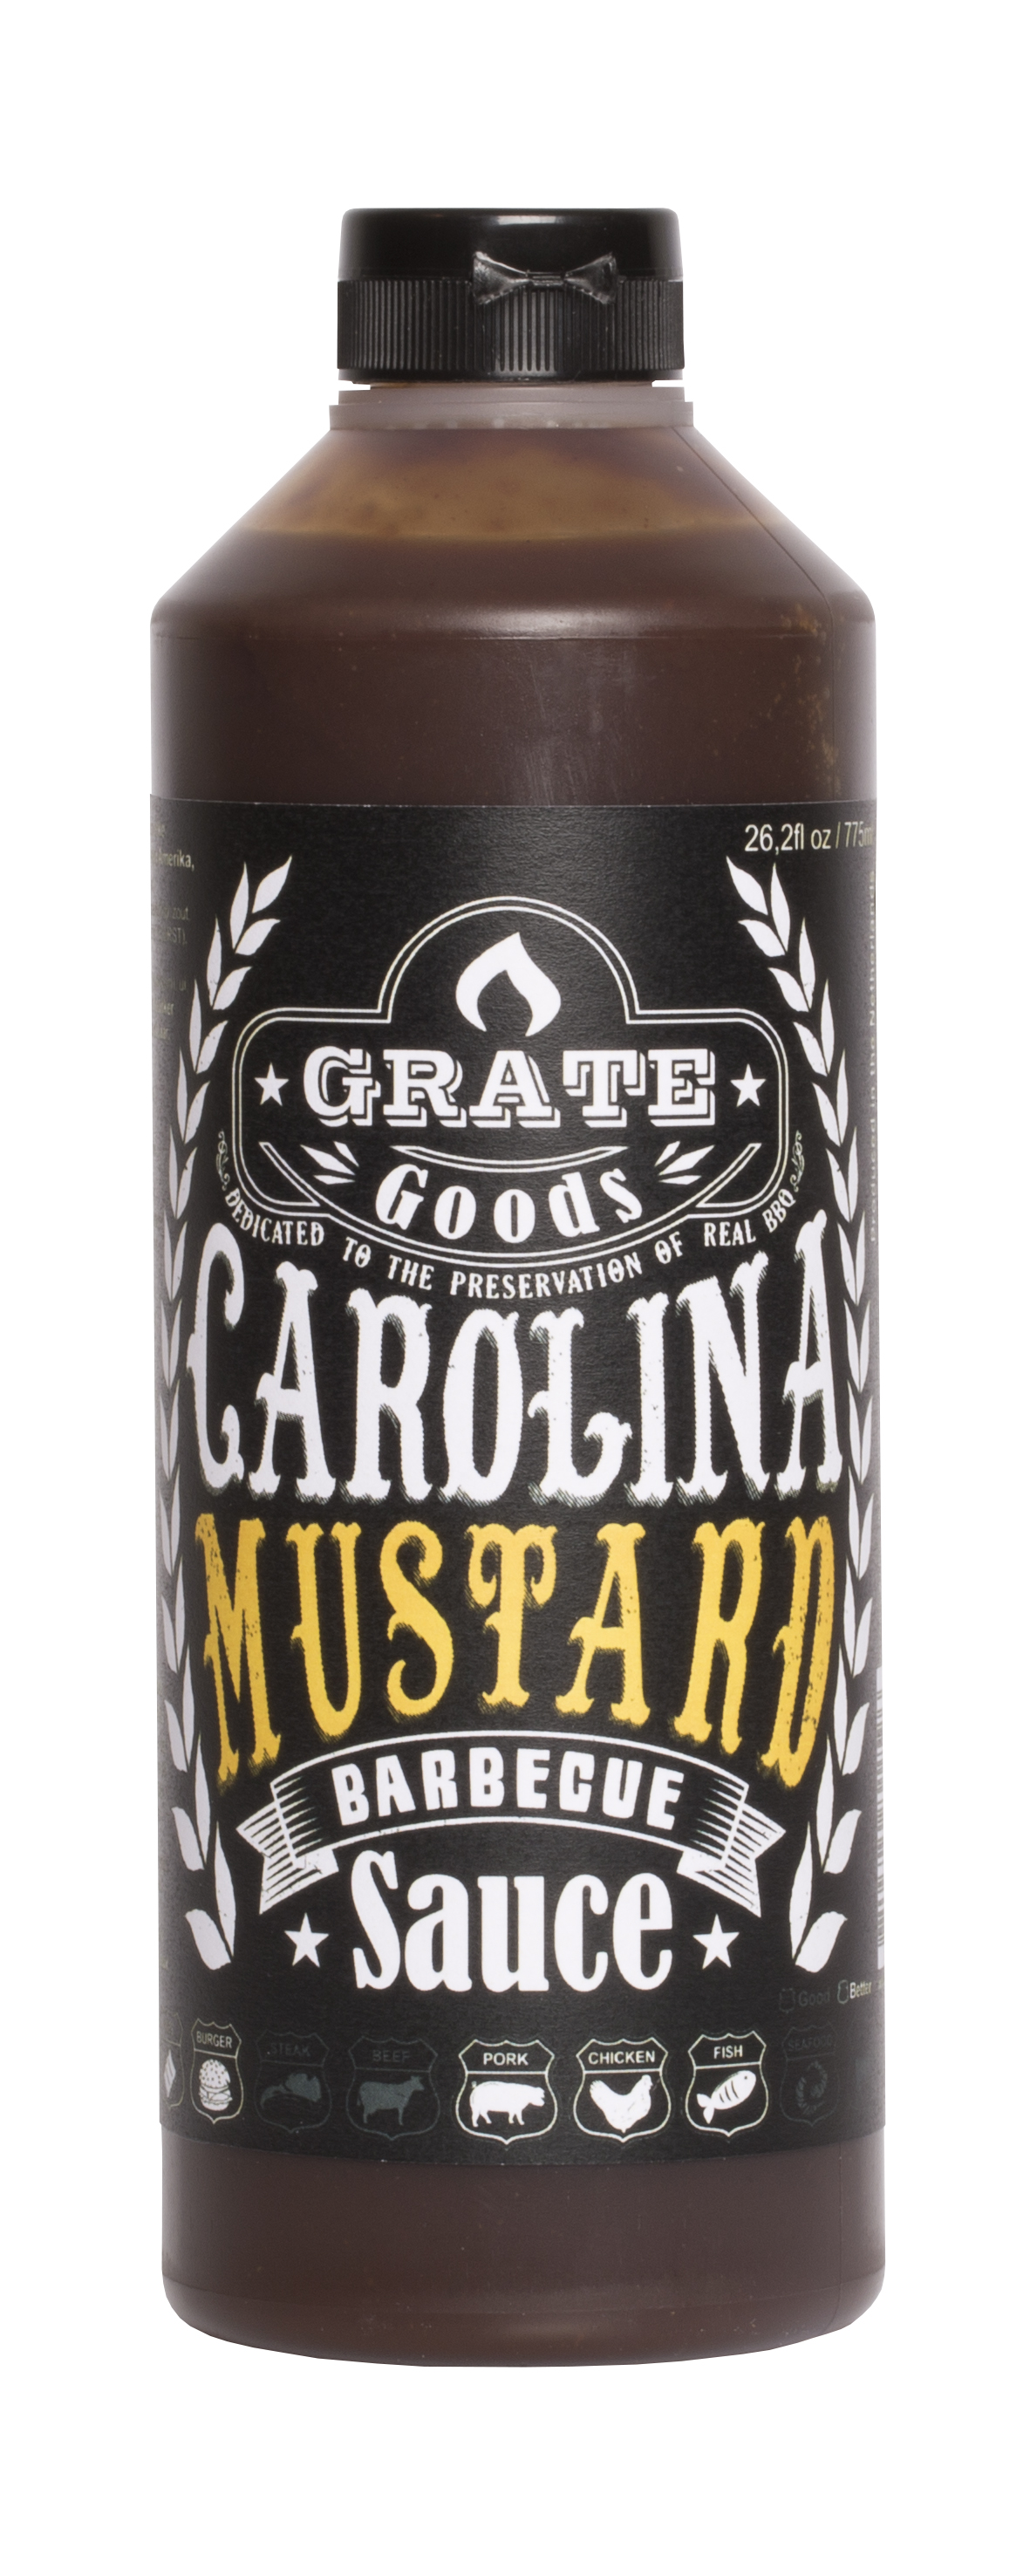 GG Carolina Mustard Barbecue Sauce 775ml